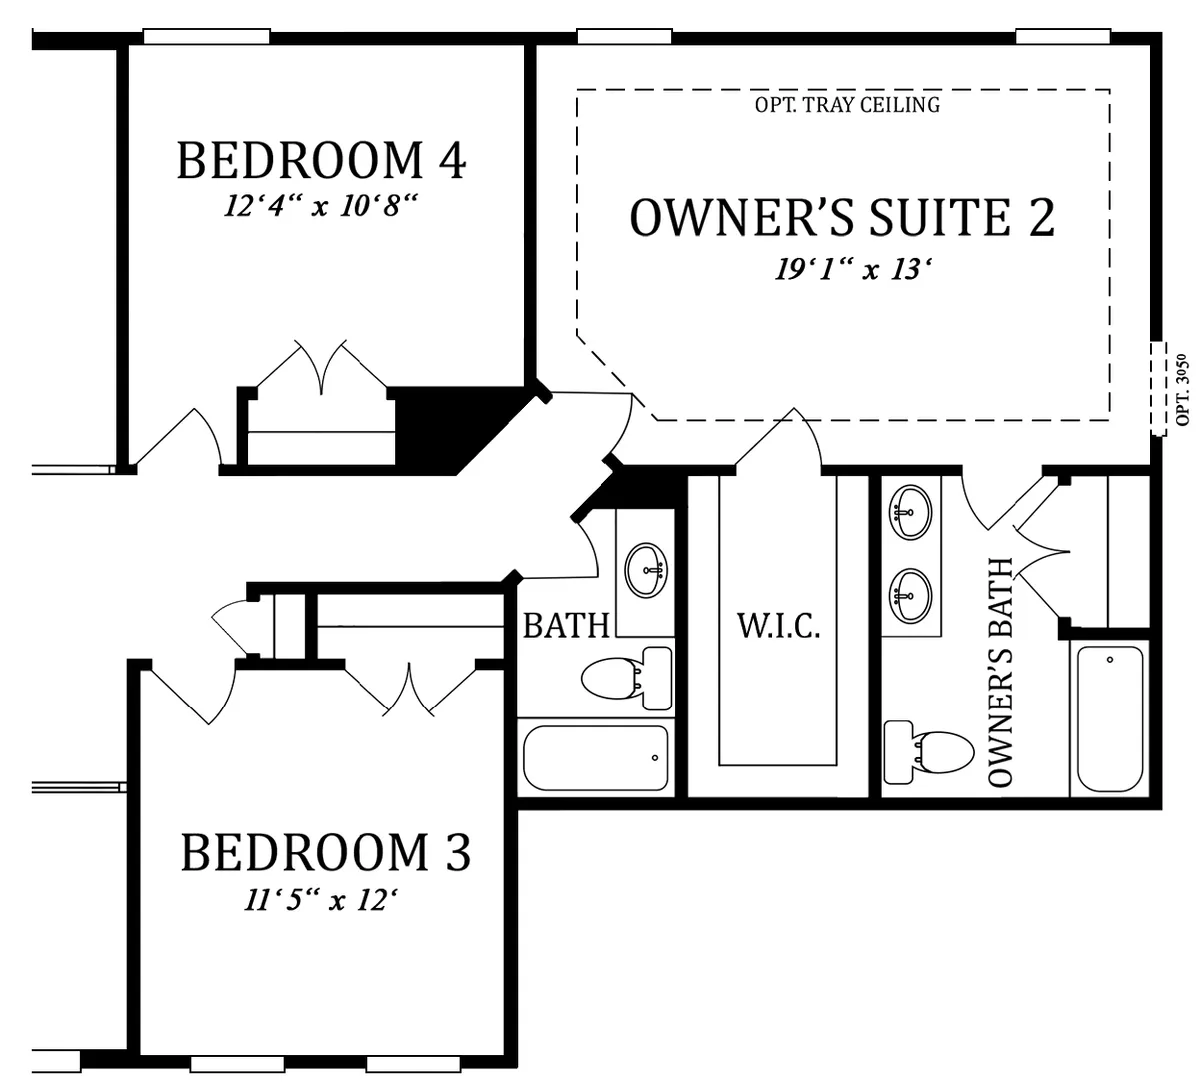 Second Floor | Optional Owner's Suite 2